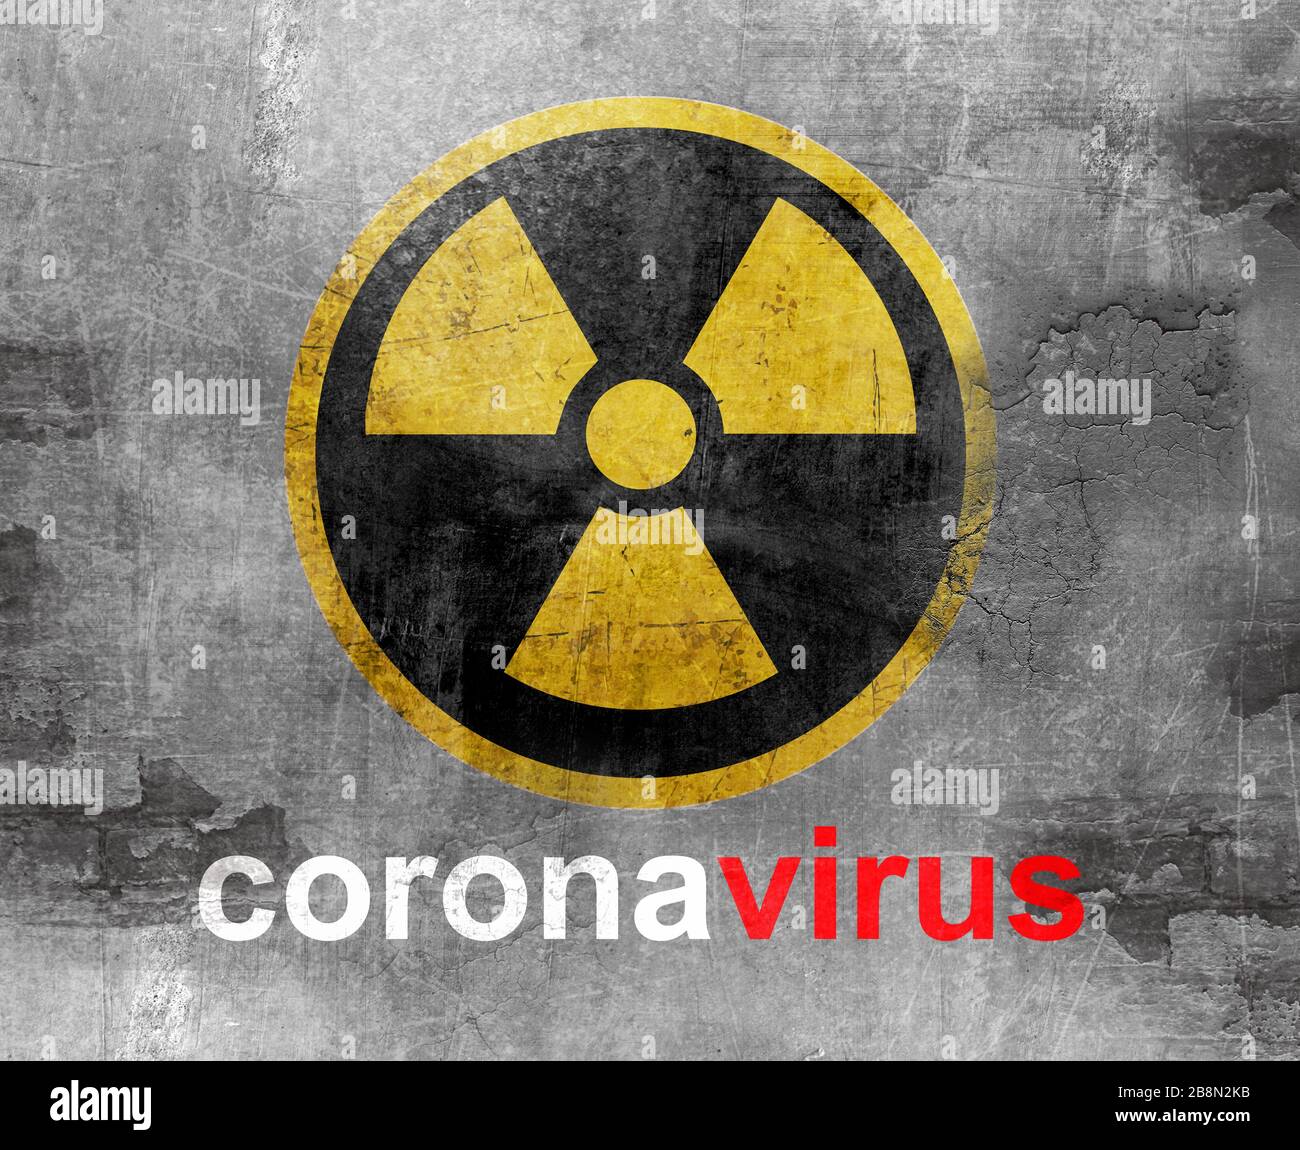 coronavirus covid19 symbole de danger sur le mur Banque D'Images